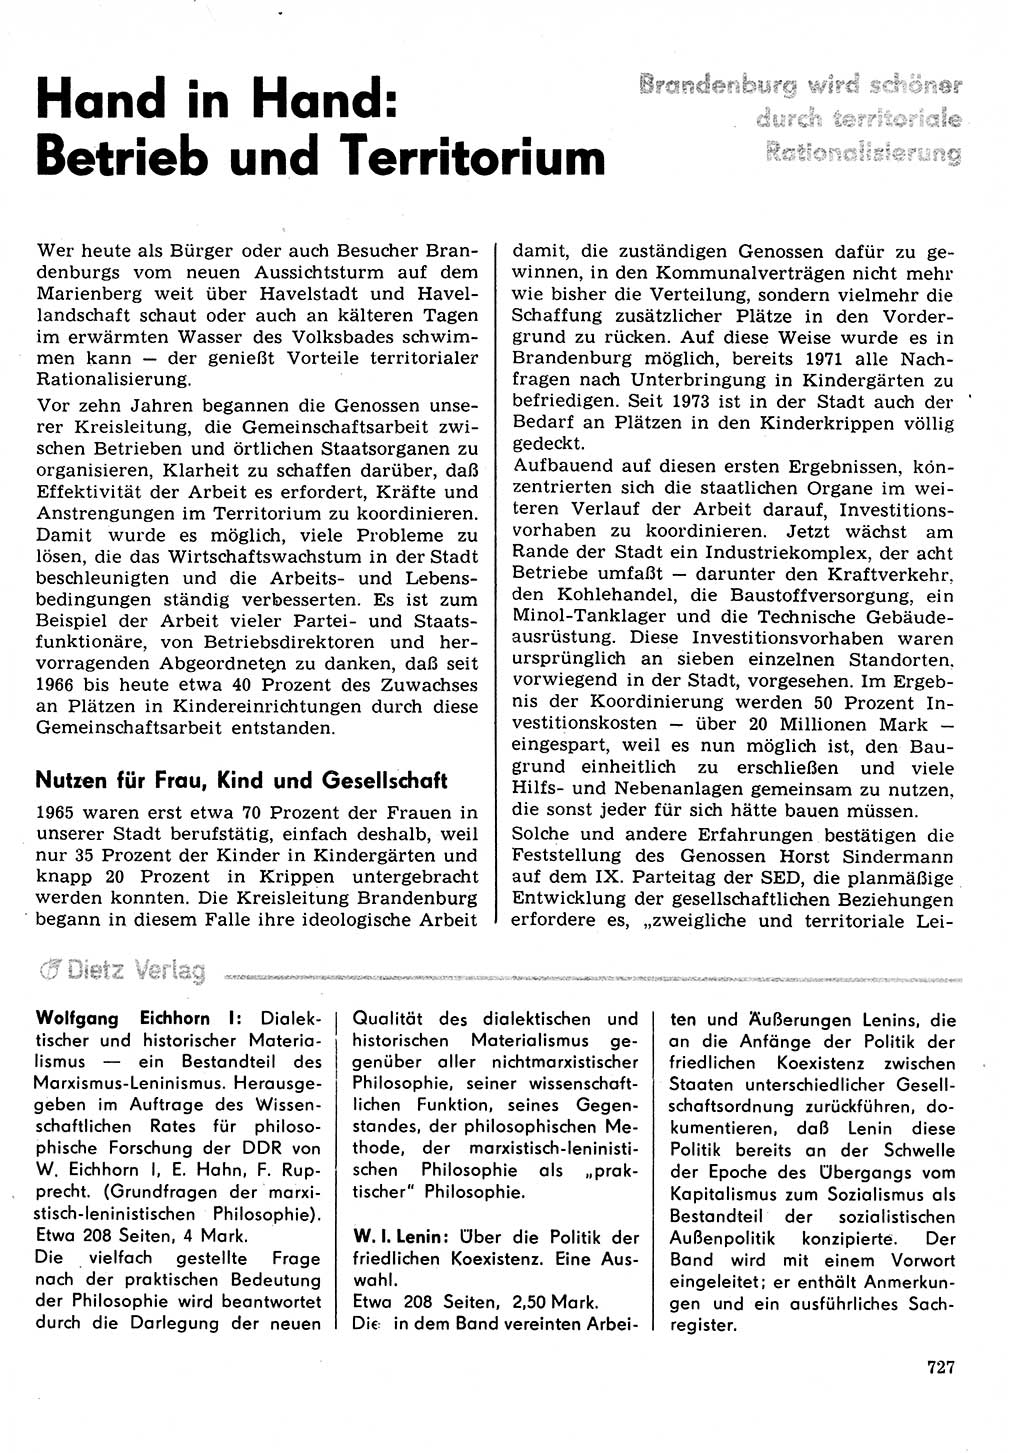 Neuer Weg (NW), Organ des Zentralkomitees (ZK) der SED (Sozialistische Einheitspartei Deutschlands) für Fragen des Parteilebens, 31. Jahrgang [Deutsche Demokratische Republik (DDR)] 1976, Seite 727 (NW ZK SED DDR 1976, S. 727)